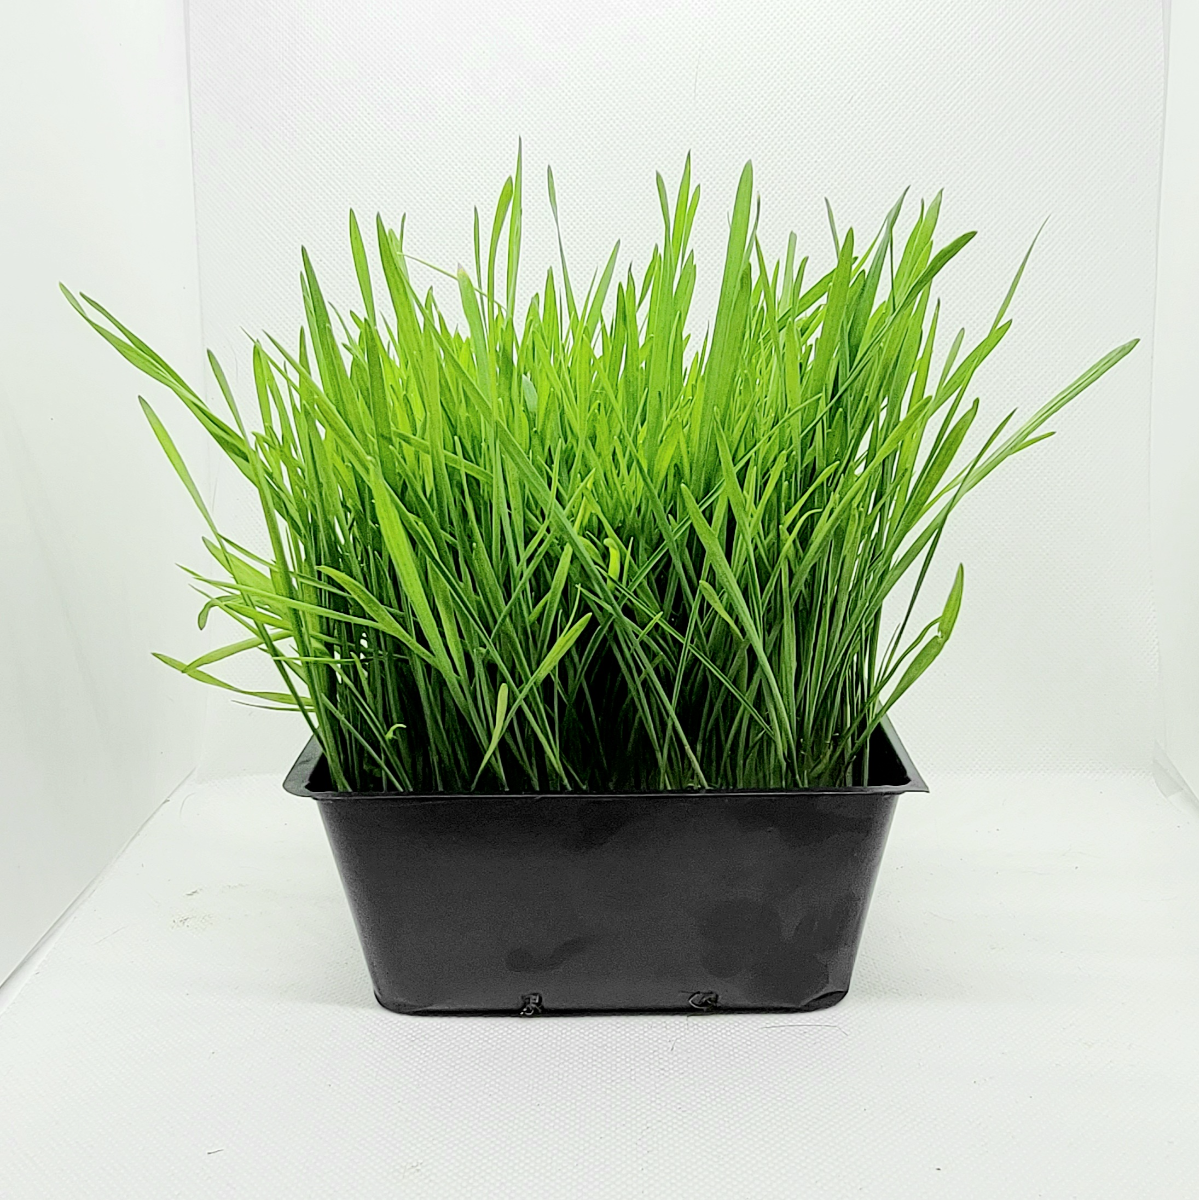 live-wheatgrass-pet-grass-5x5-